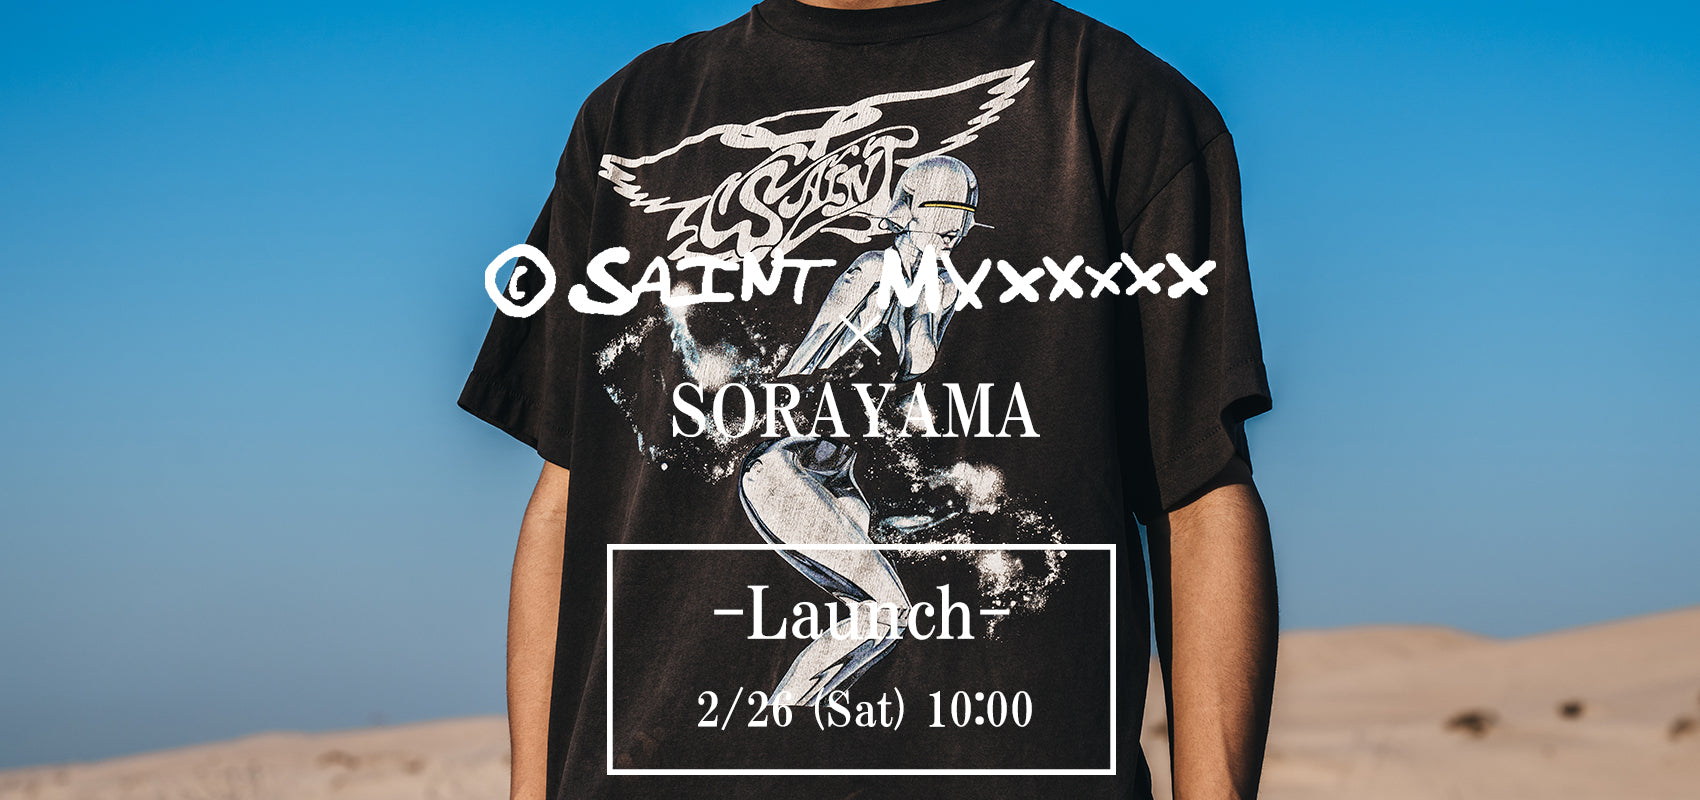 SORAYAMA × SAINT M×××××× コラボレーション 2/26発売